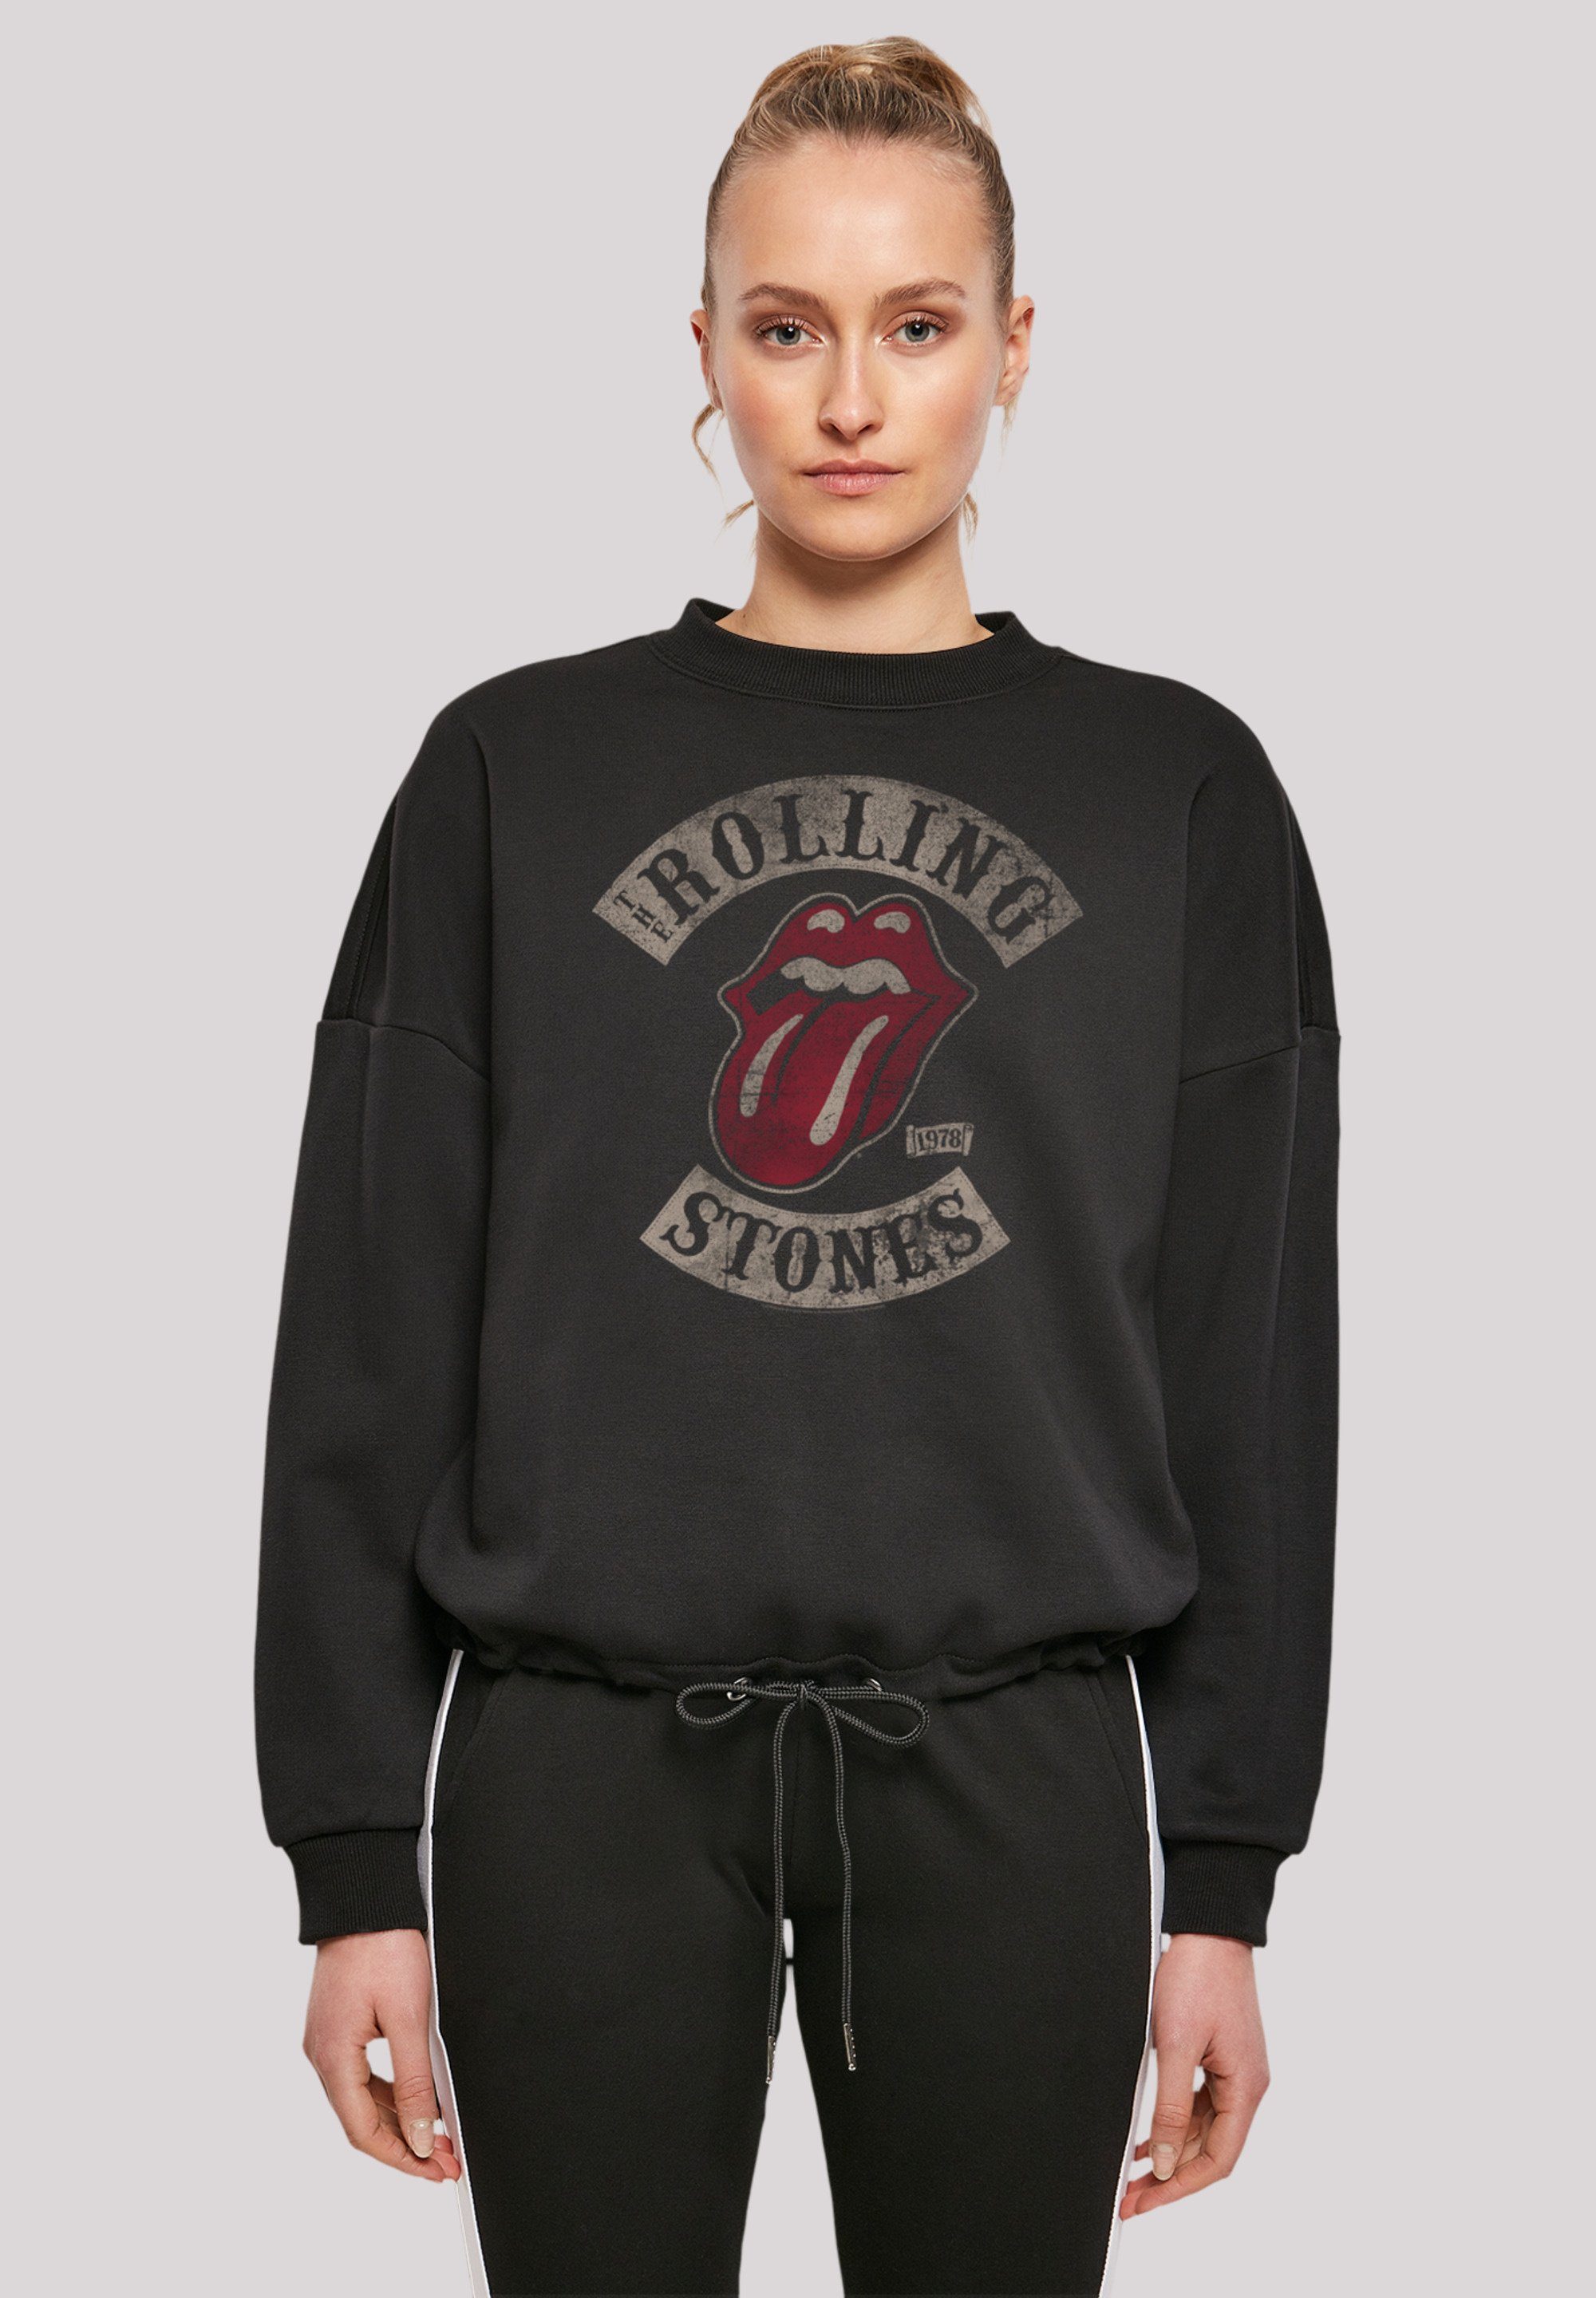 Neueste und Beste F4NT4STIC Sweatshirt The '78 Stones Tour Print schwarz Rolling